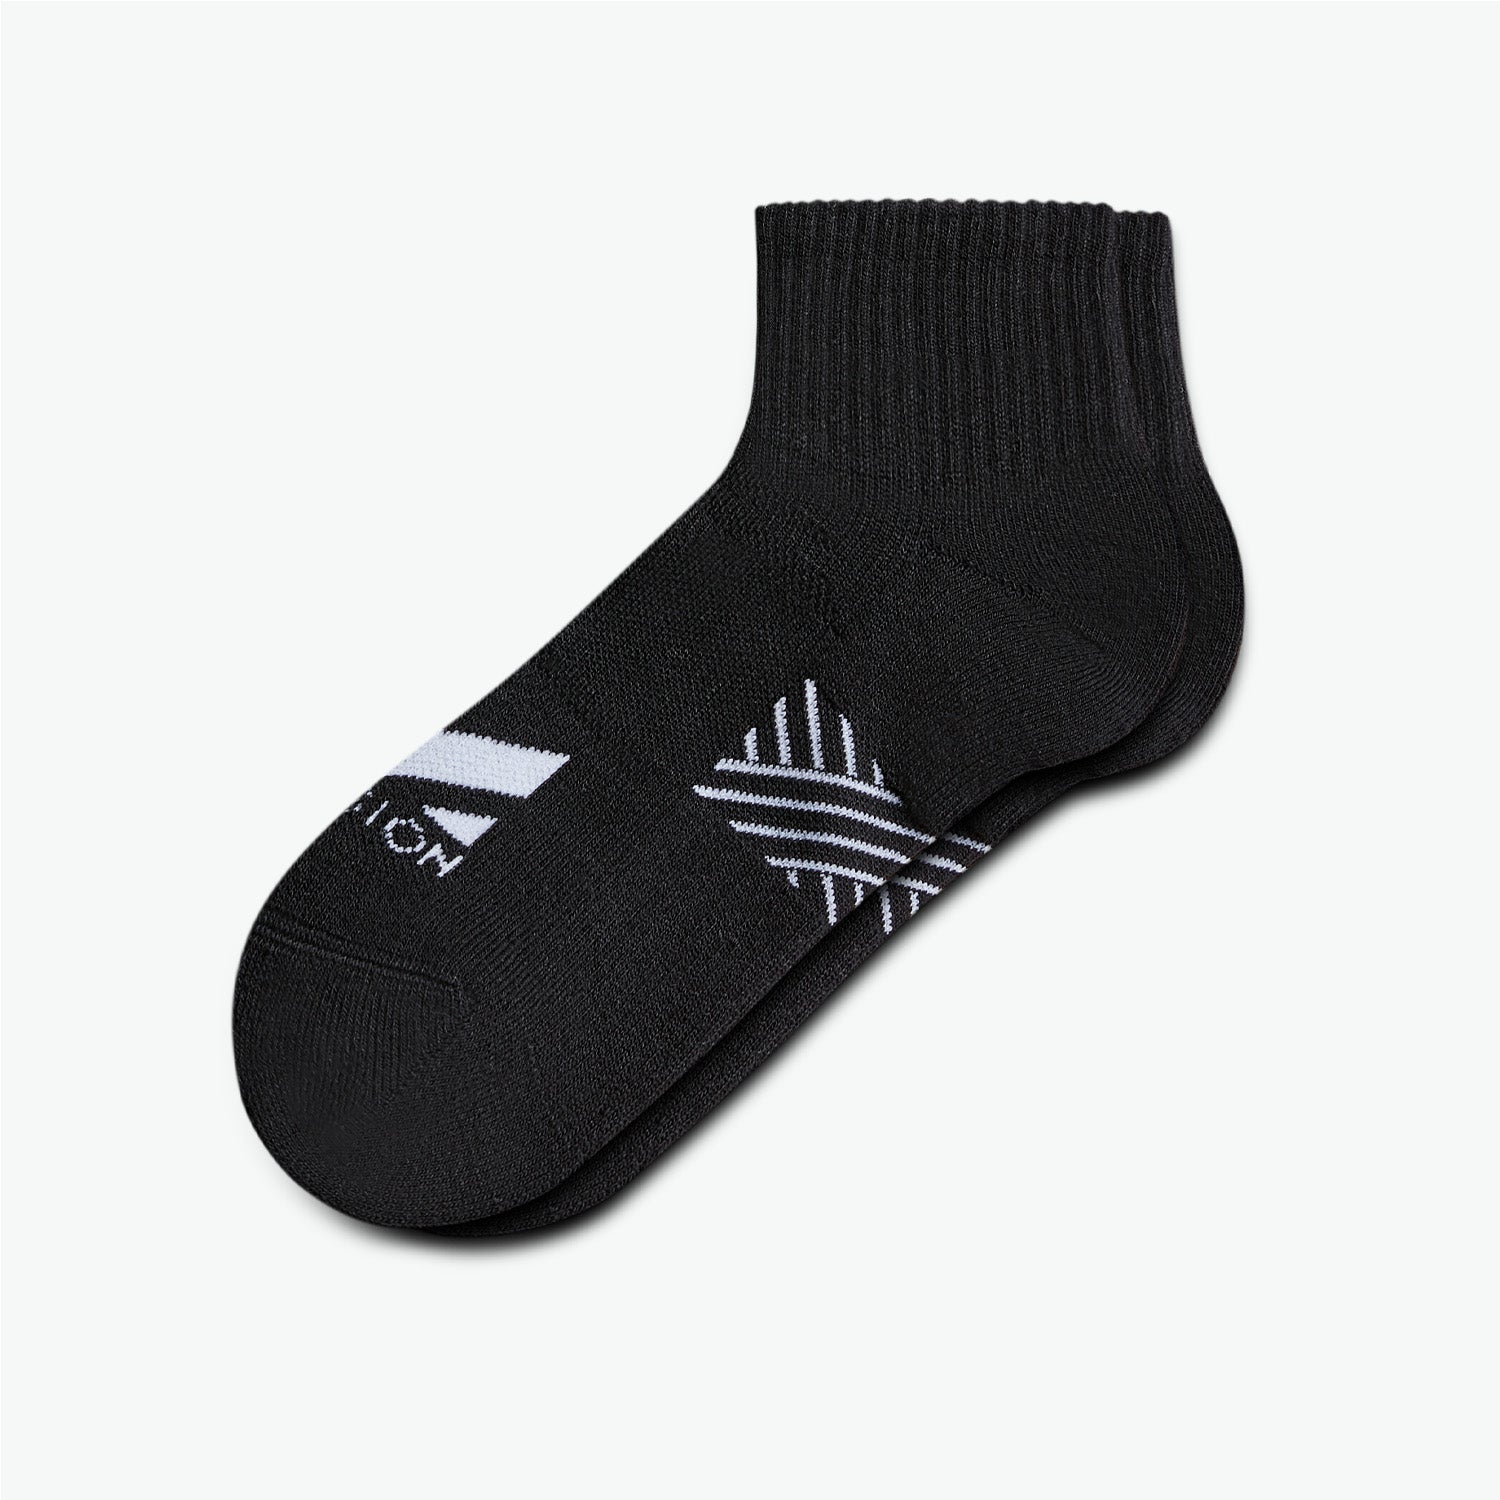 Pinnacle Dry Comfort Quarter Socks Socks MISSION M  (US 6-8) Black 